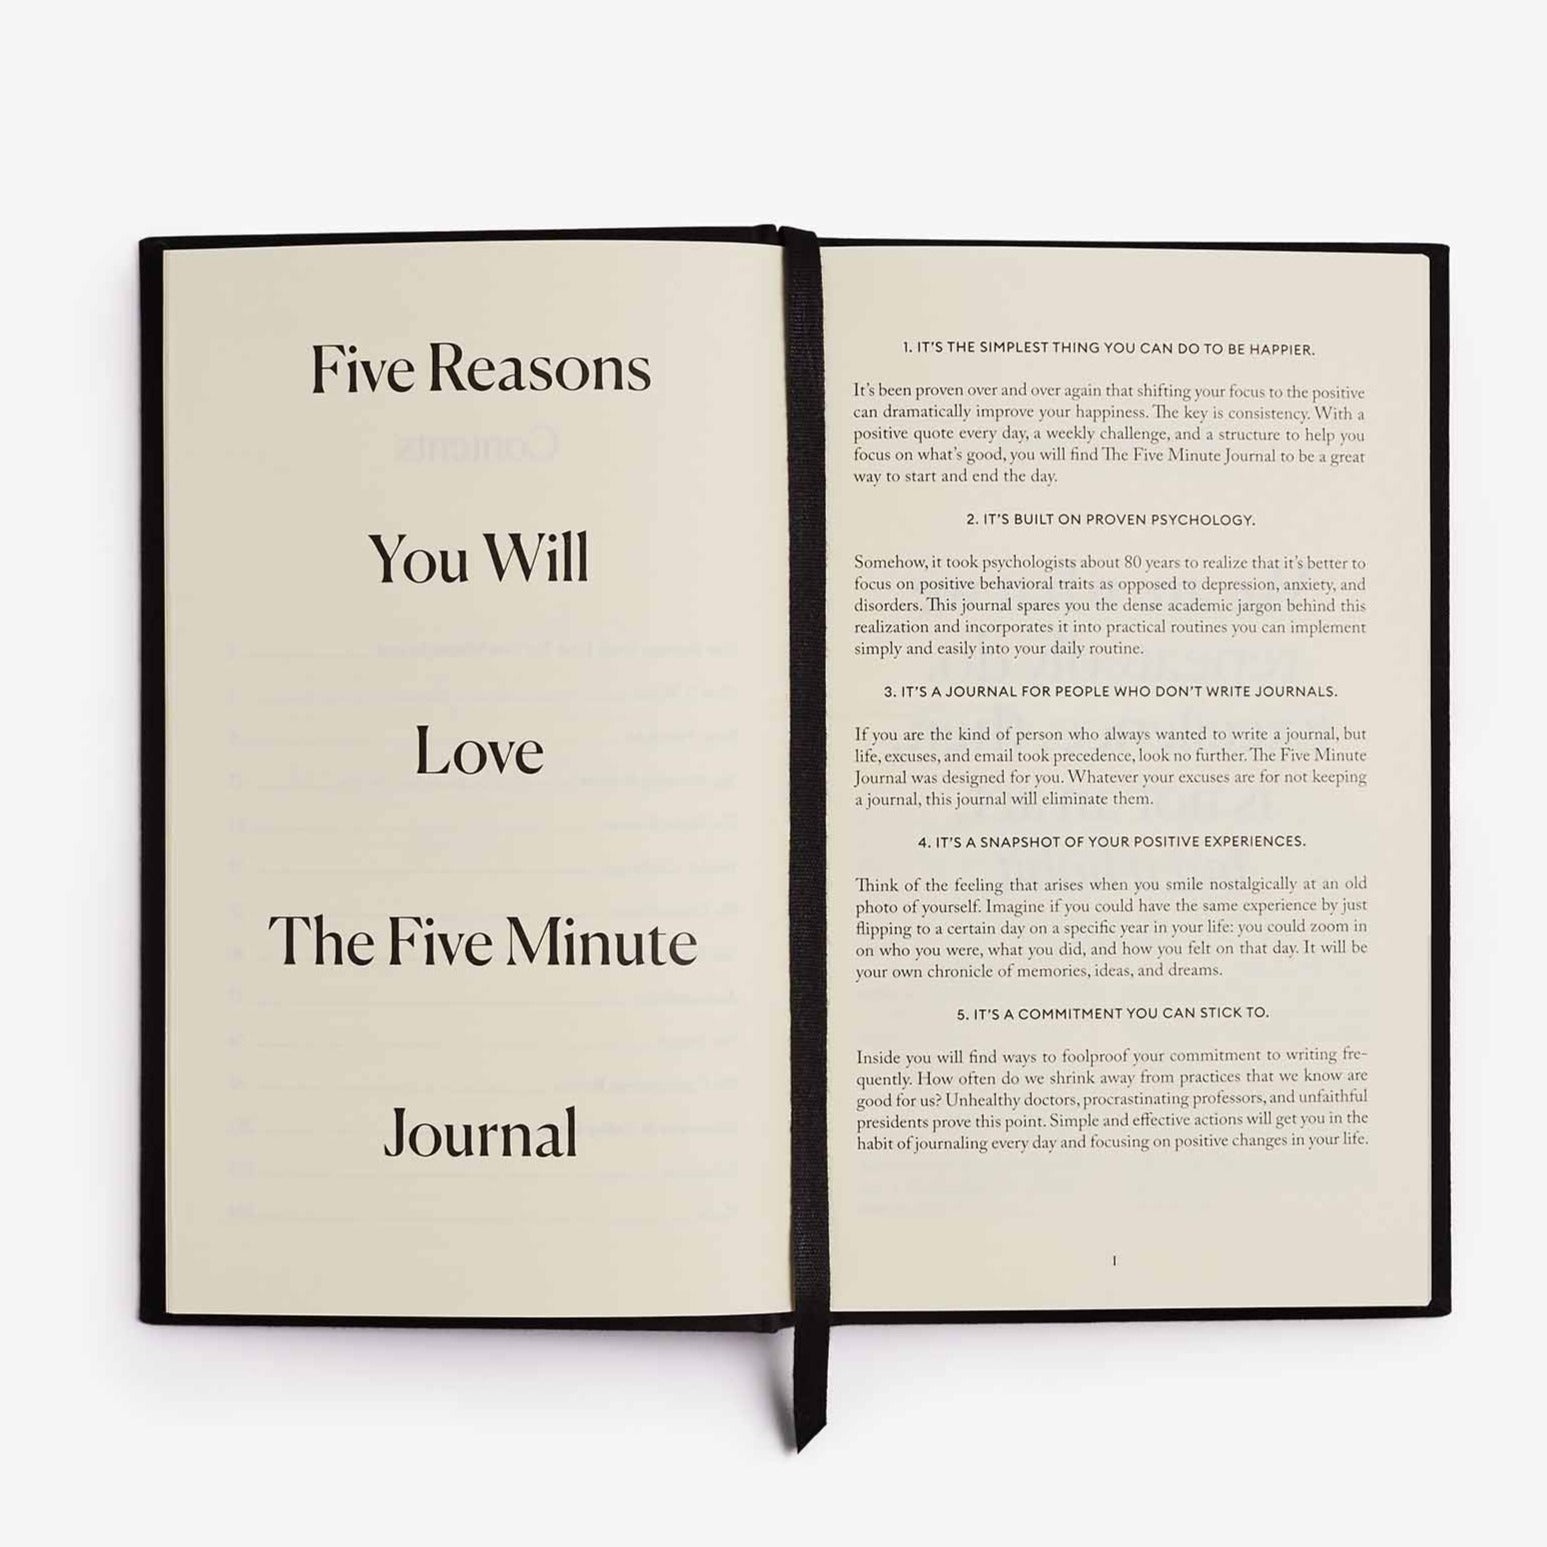 The Five Minute Journal - The Five Minute Journal